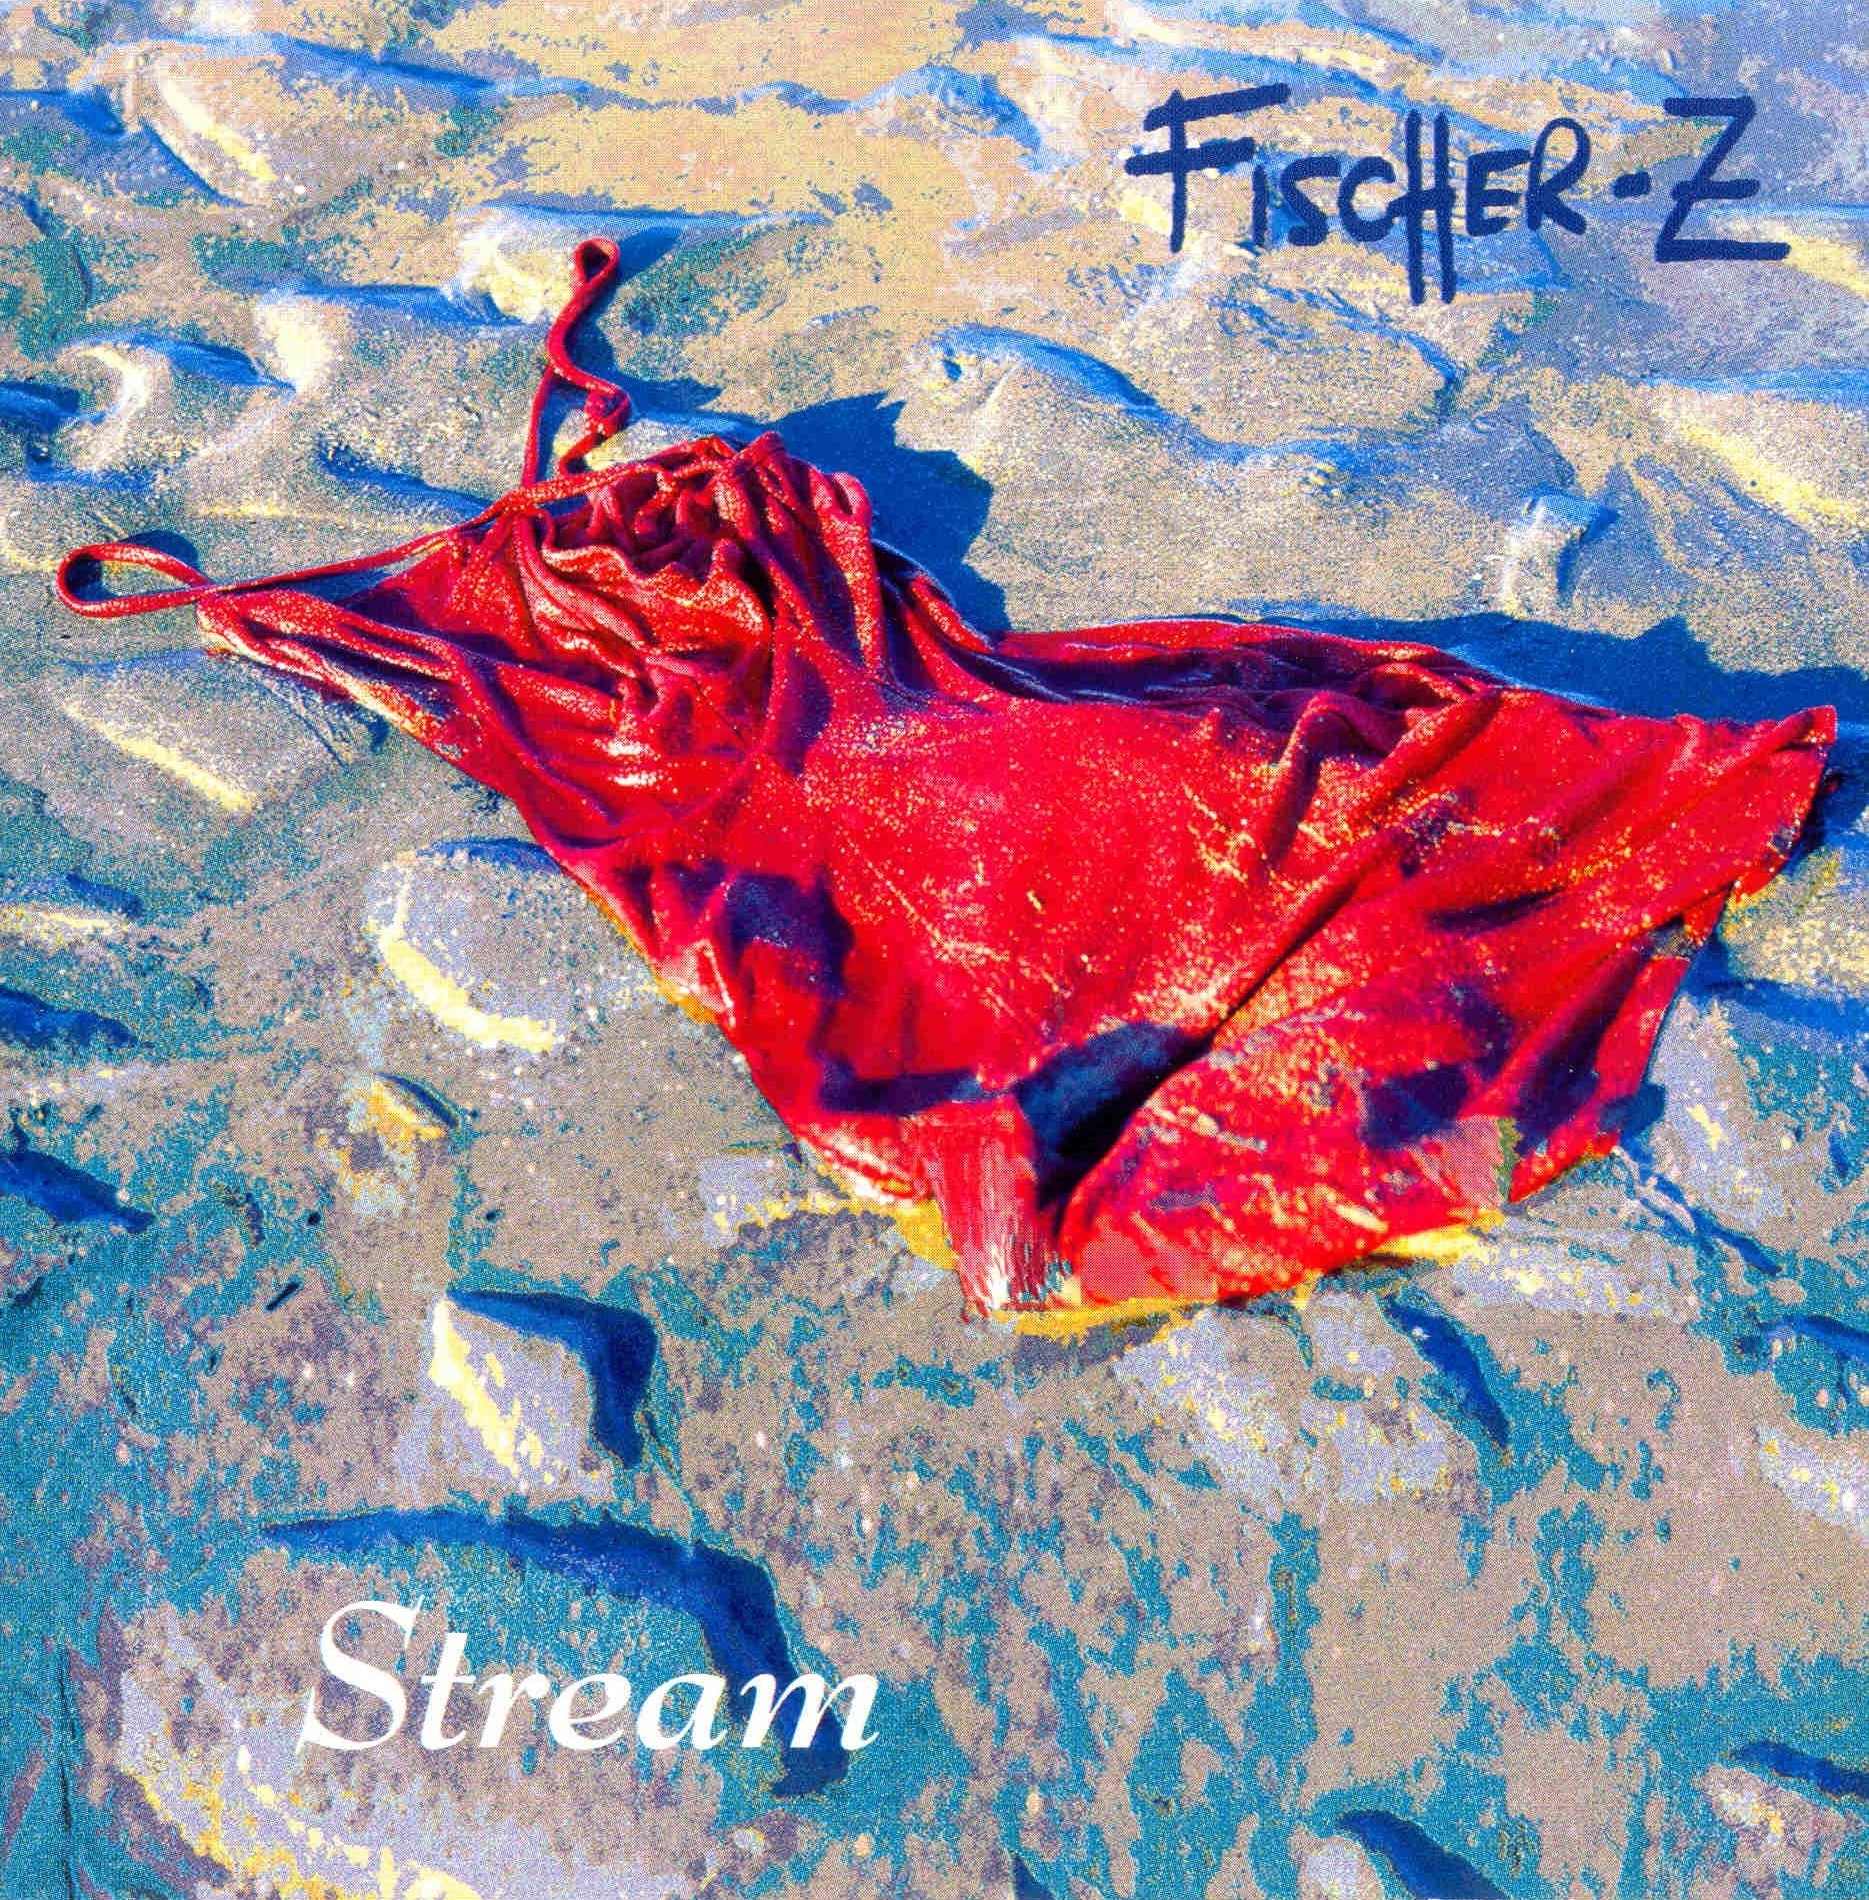 — Fischer-Z